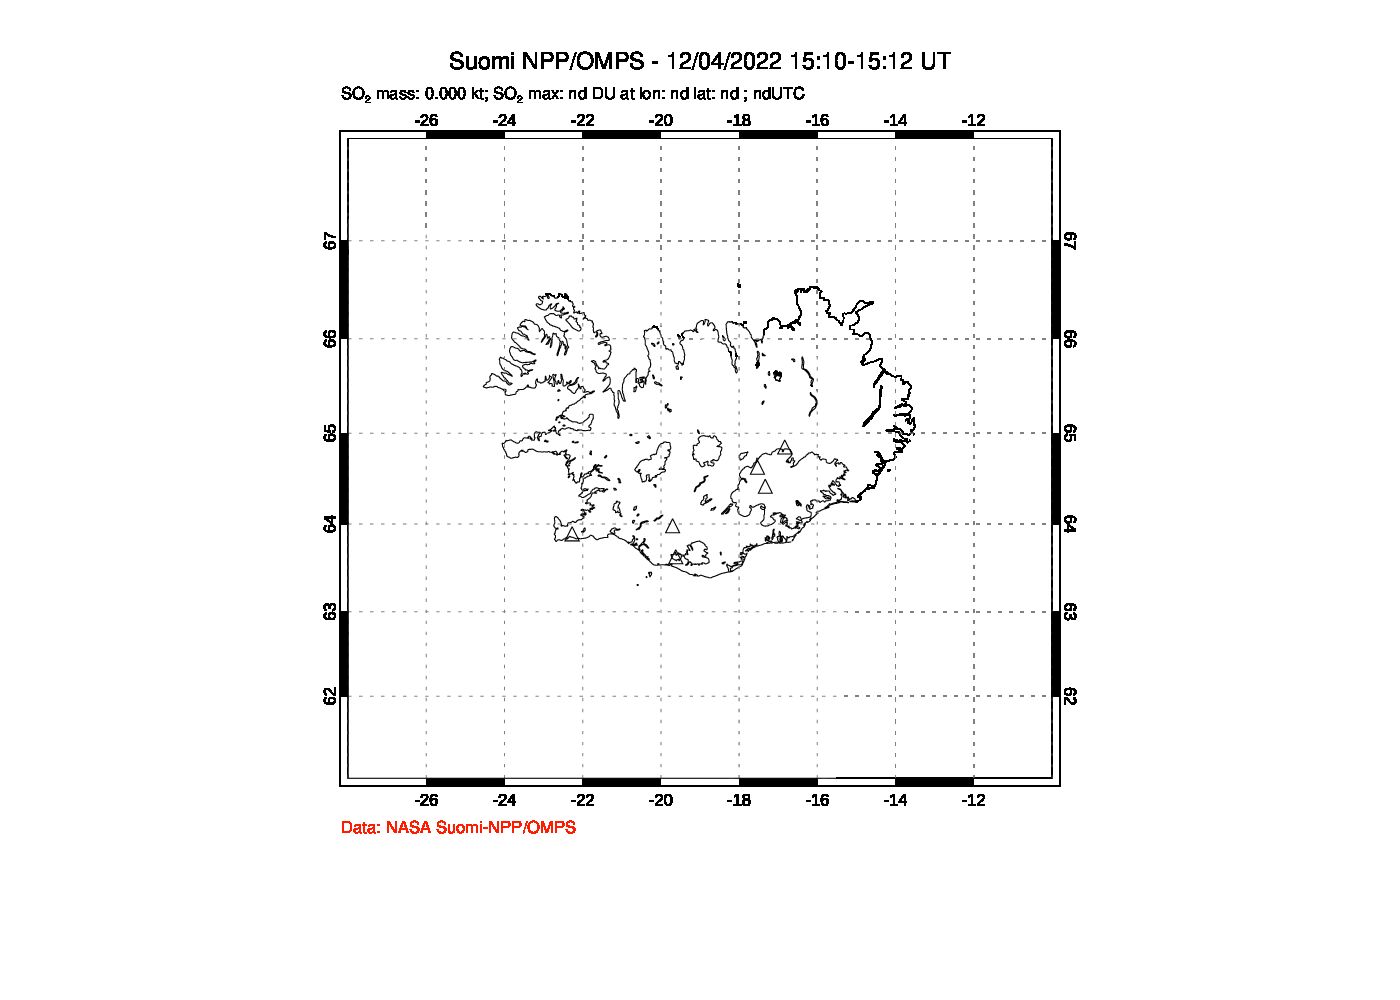 A sulfur dioxide image over Iceland on Dec 04, 2022.